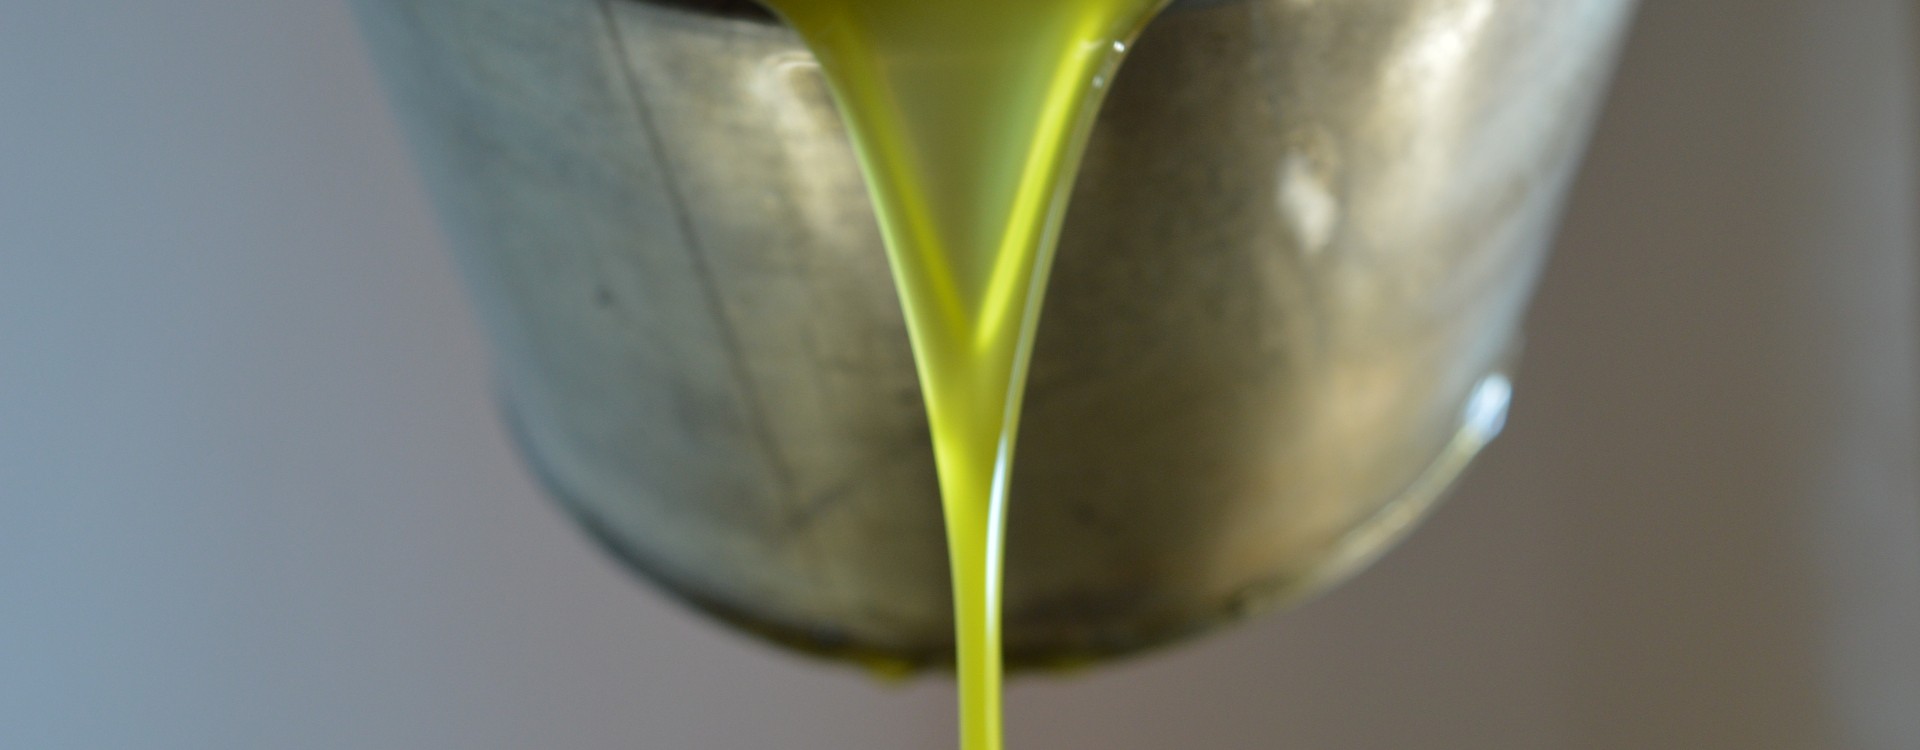 Che cos'è l'olio EVO? Definizione, proprietà e benefici